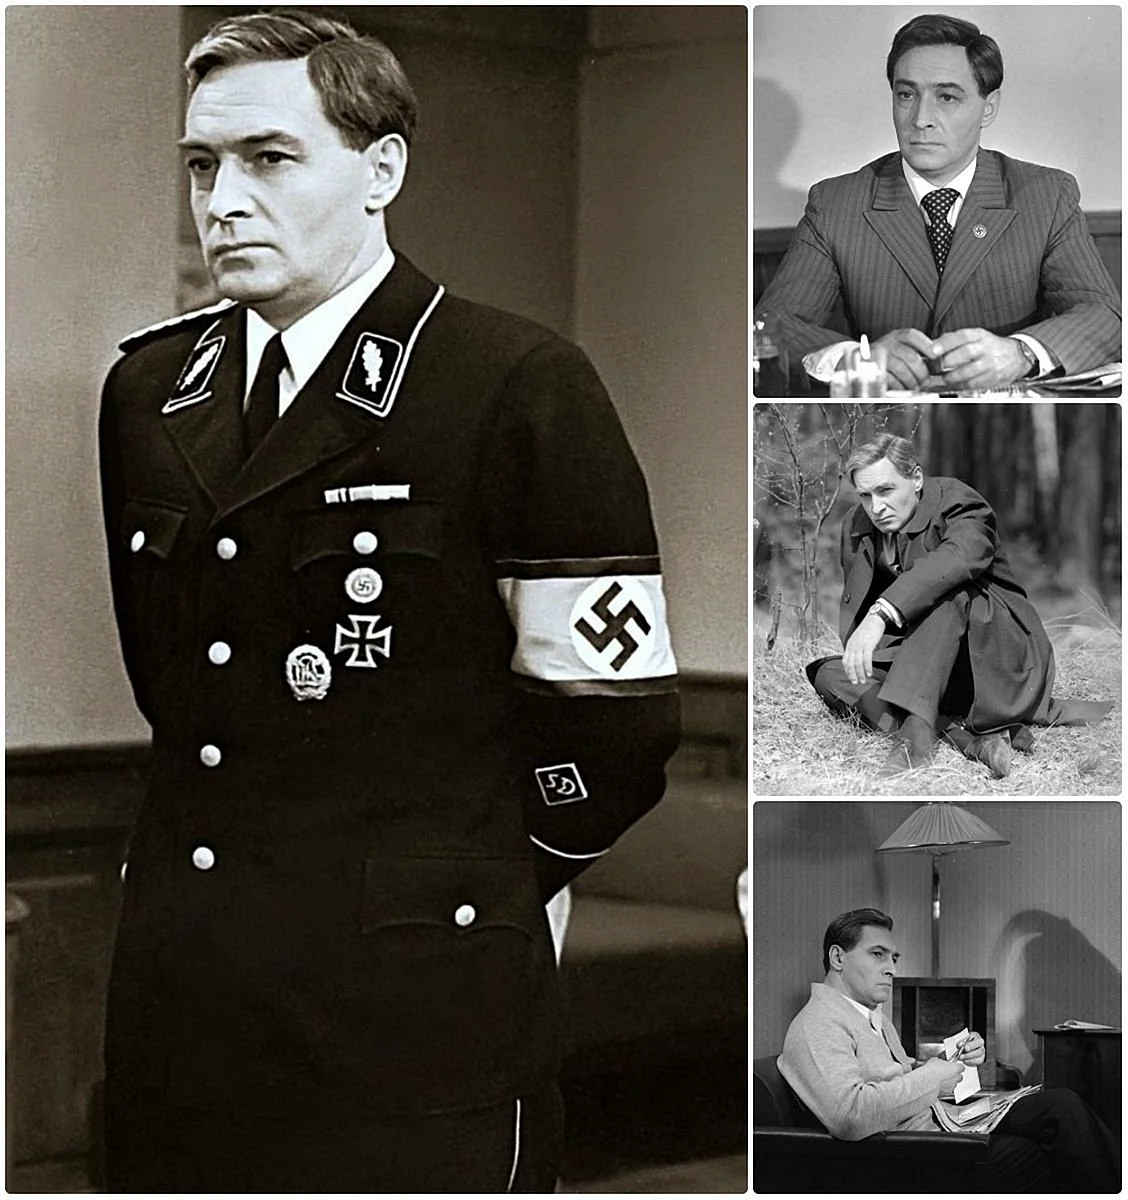 Макс Отто фон Штирлиц